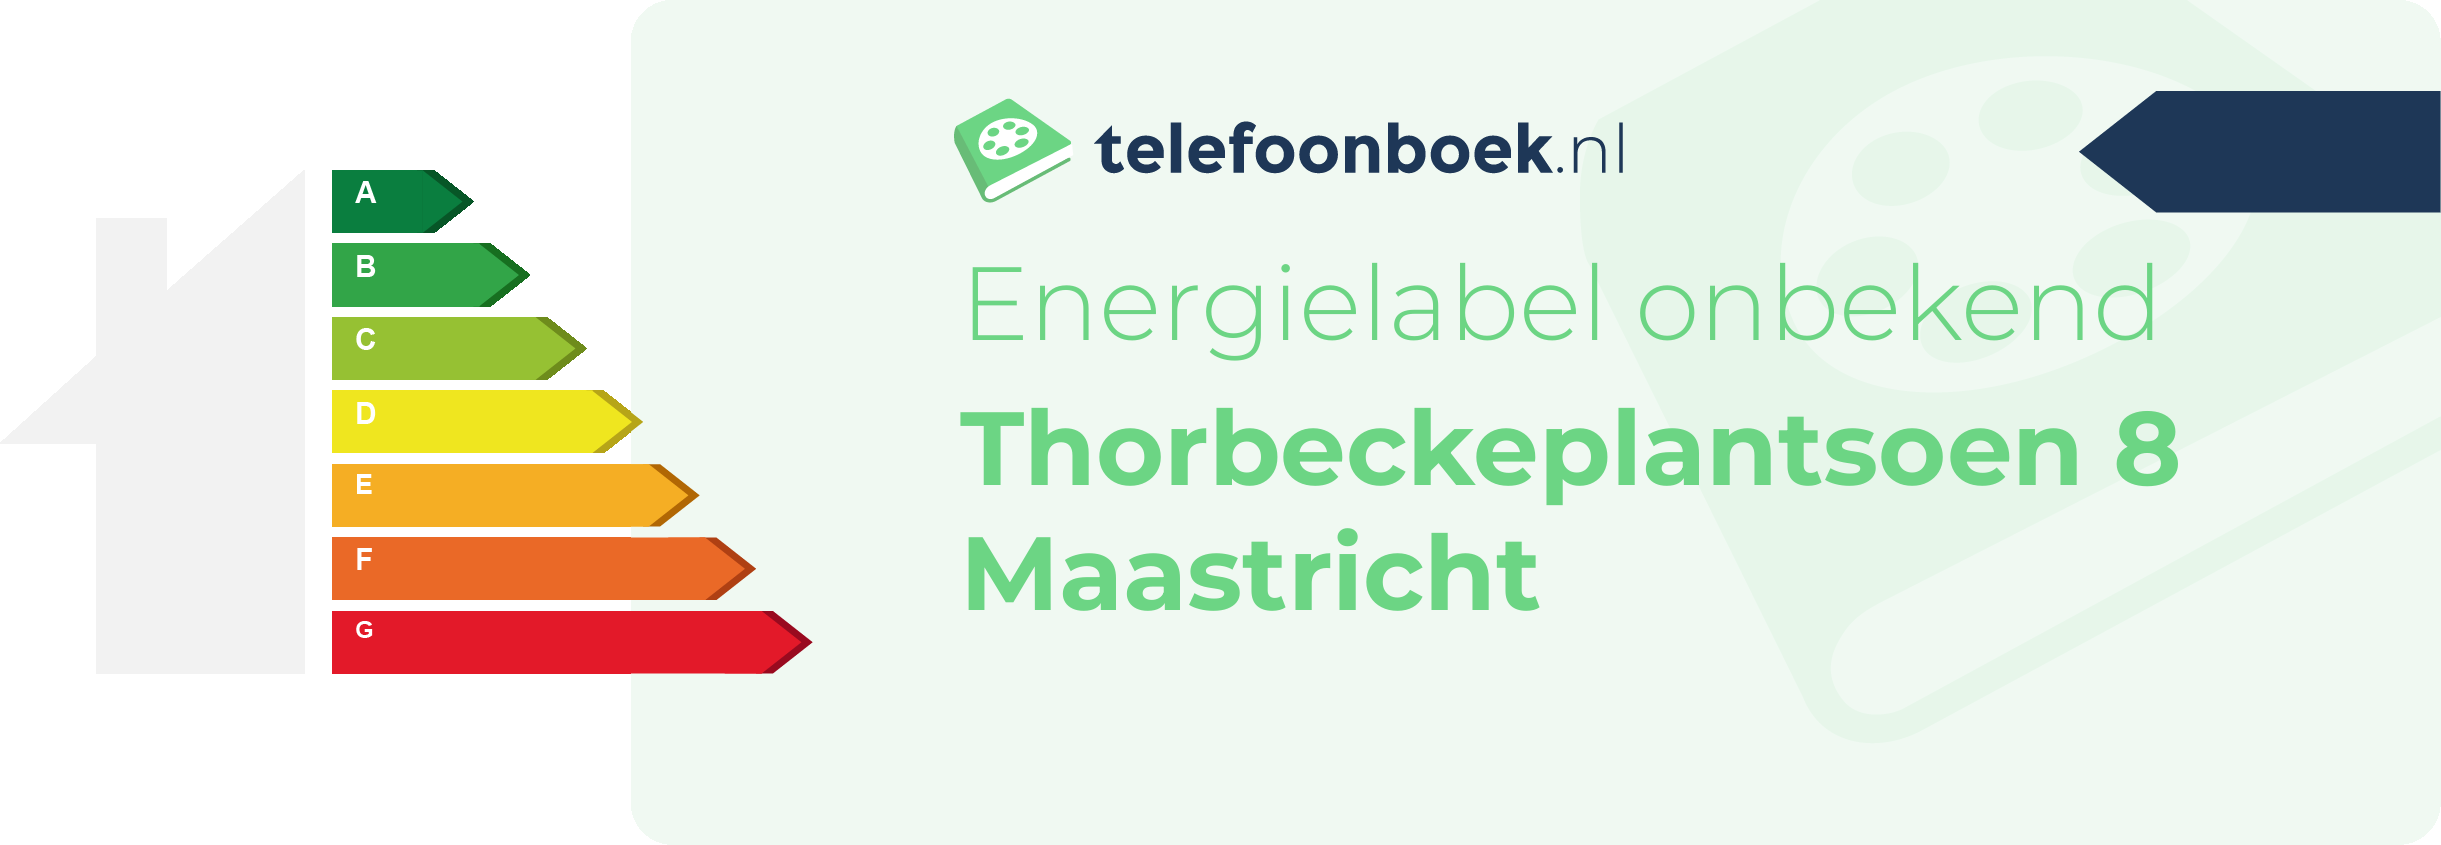 Energielabel Thorbeckeplantsoen 8 Maastricht